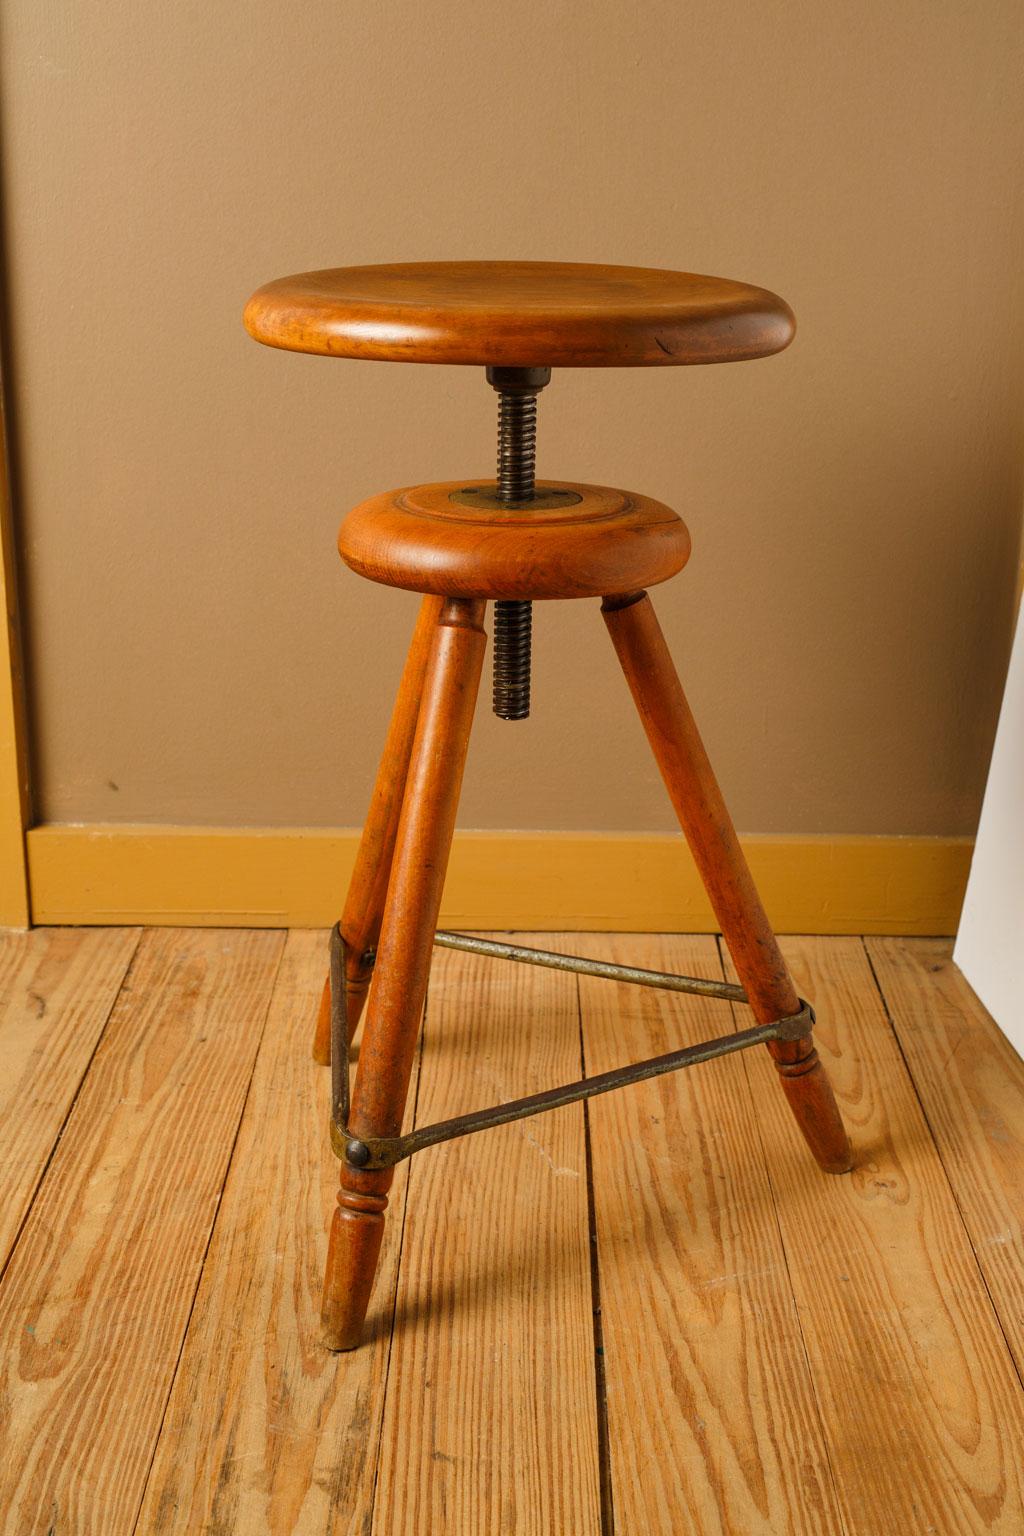 artist stools